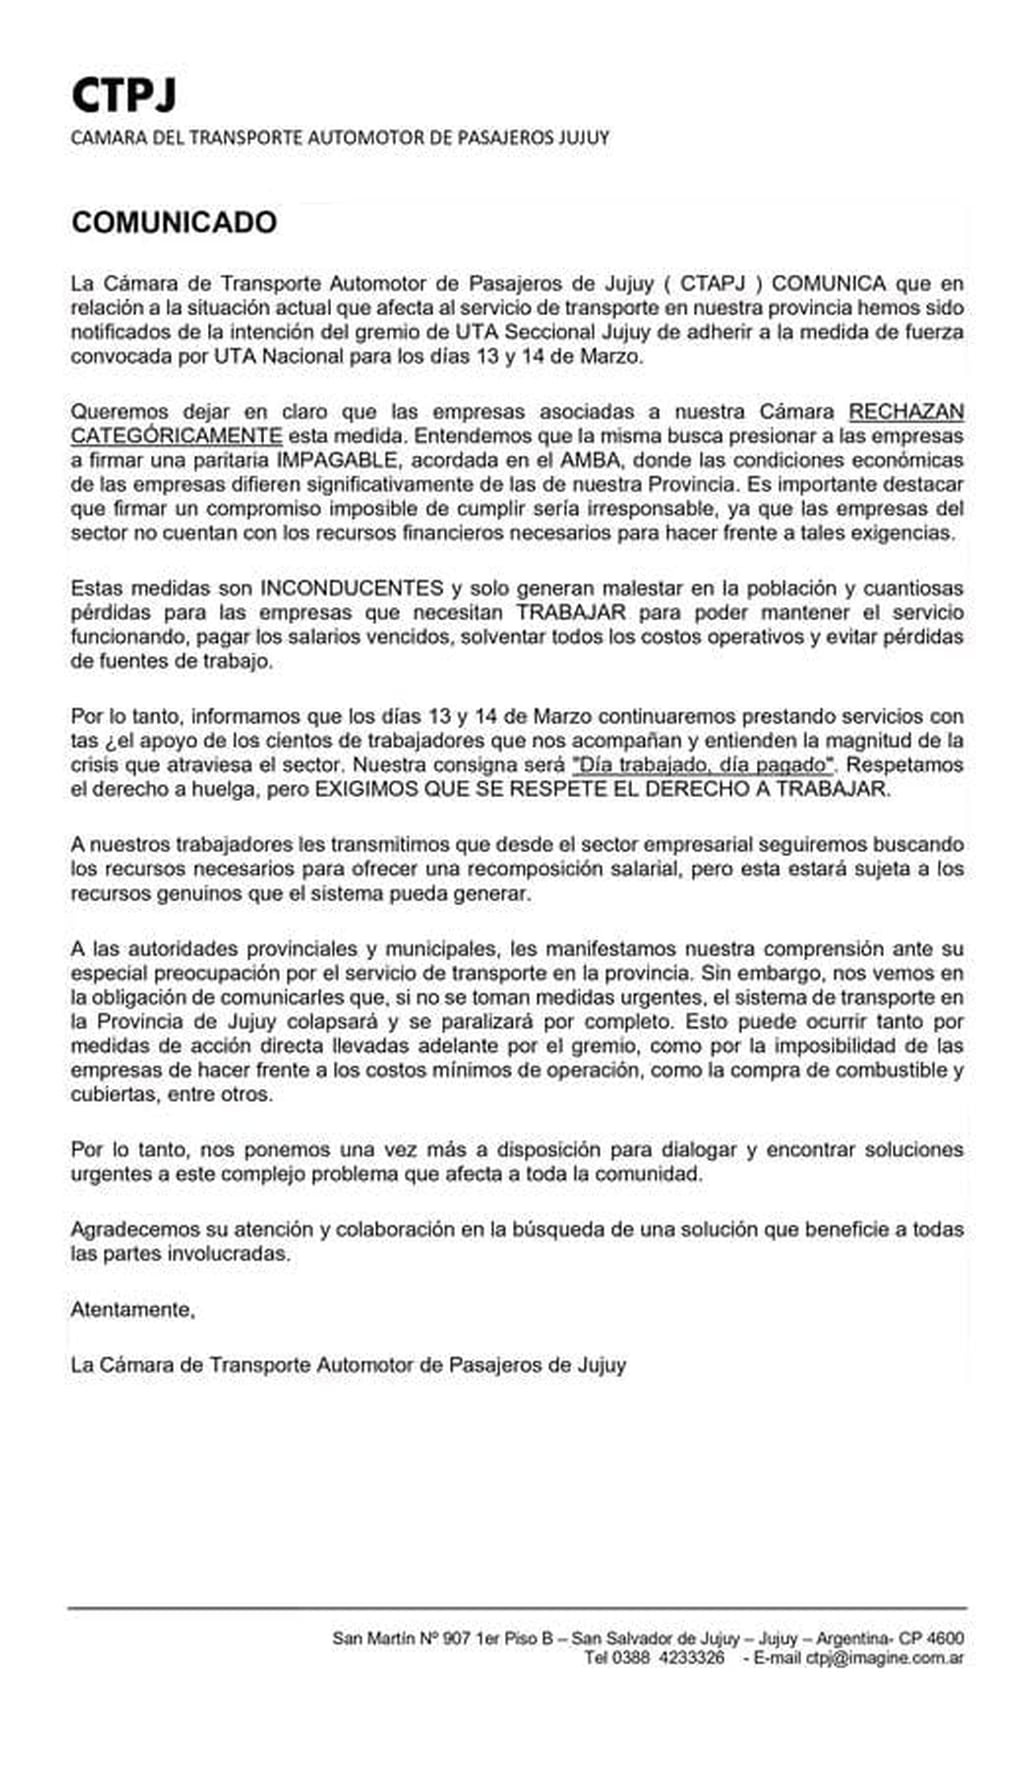 La Cámara del Transporte Automotor de Pasajeros de Jujuy -CTAPJ- emitió un comunicado rechazando el paro de la UTA Jujuy argumentando que el sindicato presiona por una "paritaria impagable".